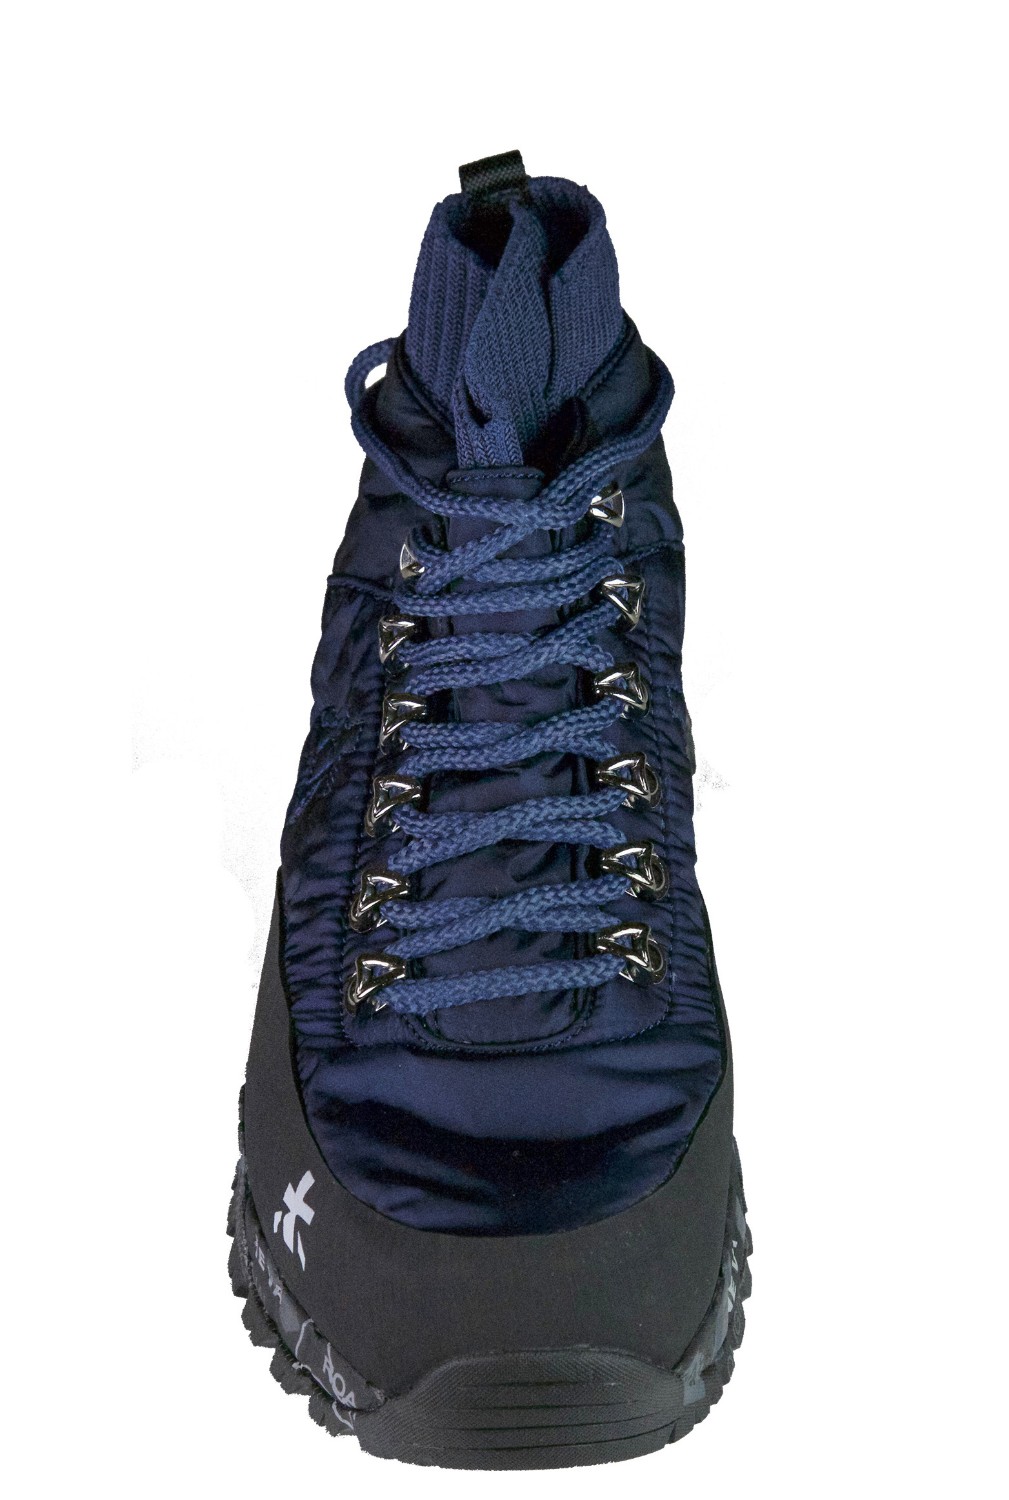 shop Premiata White Saldi Scarpe: Sneakers Premiata White Lou Trecd, nuovo modello, tipo trekking, suola Vibram, in colore blu.

Composizione: 70% poliestere, 20% gomma, 10% elastan. number 1065